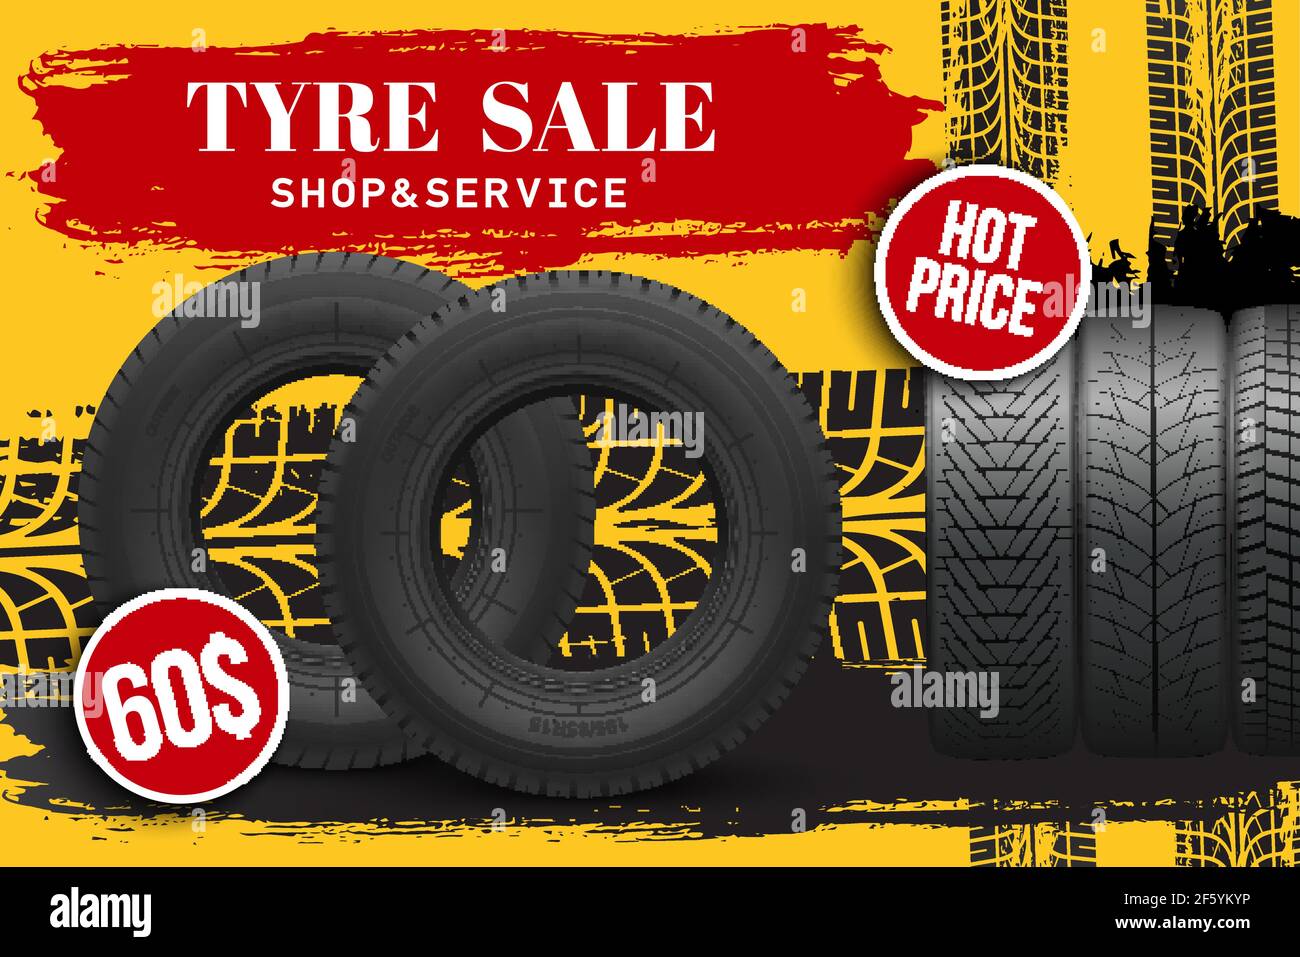 Reifen Verkauf Vektor Store Promo Poster mit 3D Reifen und grunge schwarze  Spur Lauffläche Marken. Gummiprotektoren Shop Rabatt Promotion mit  realistischen Reifen Stock-Vektorgrafik - Alamy